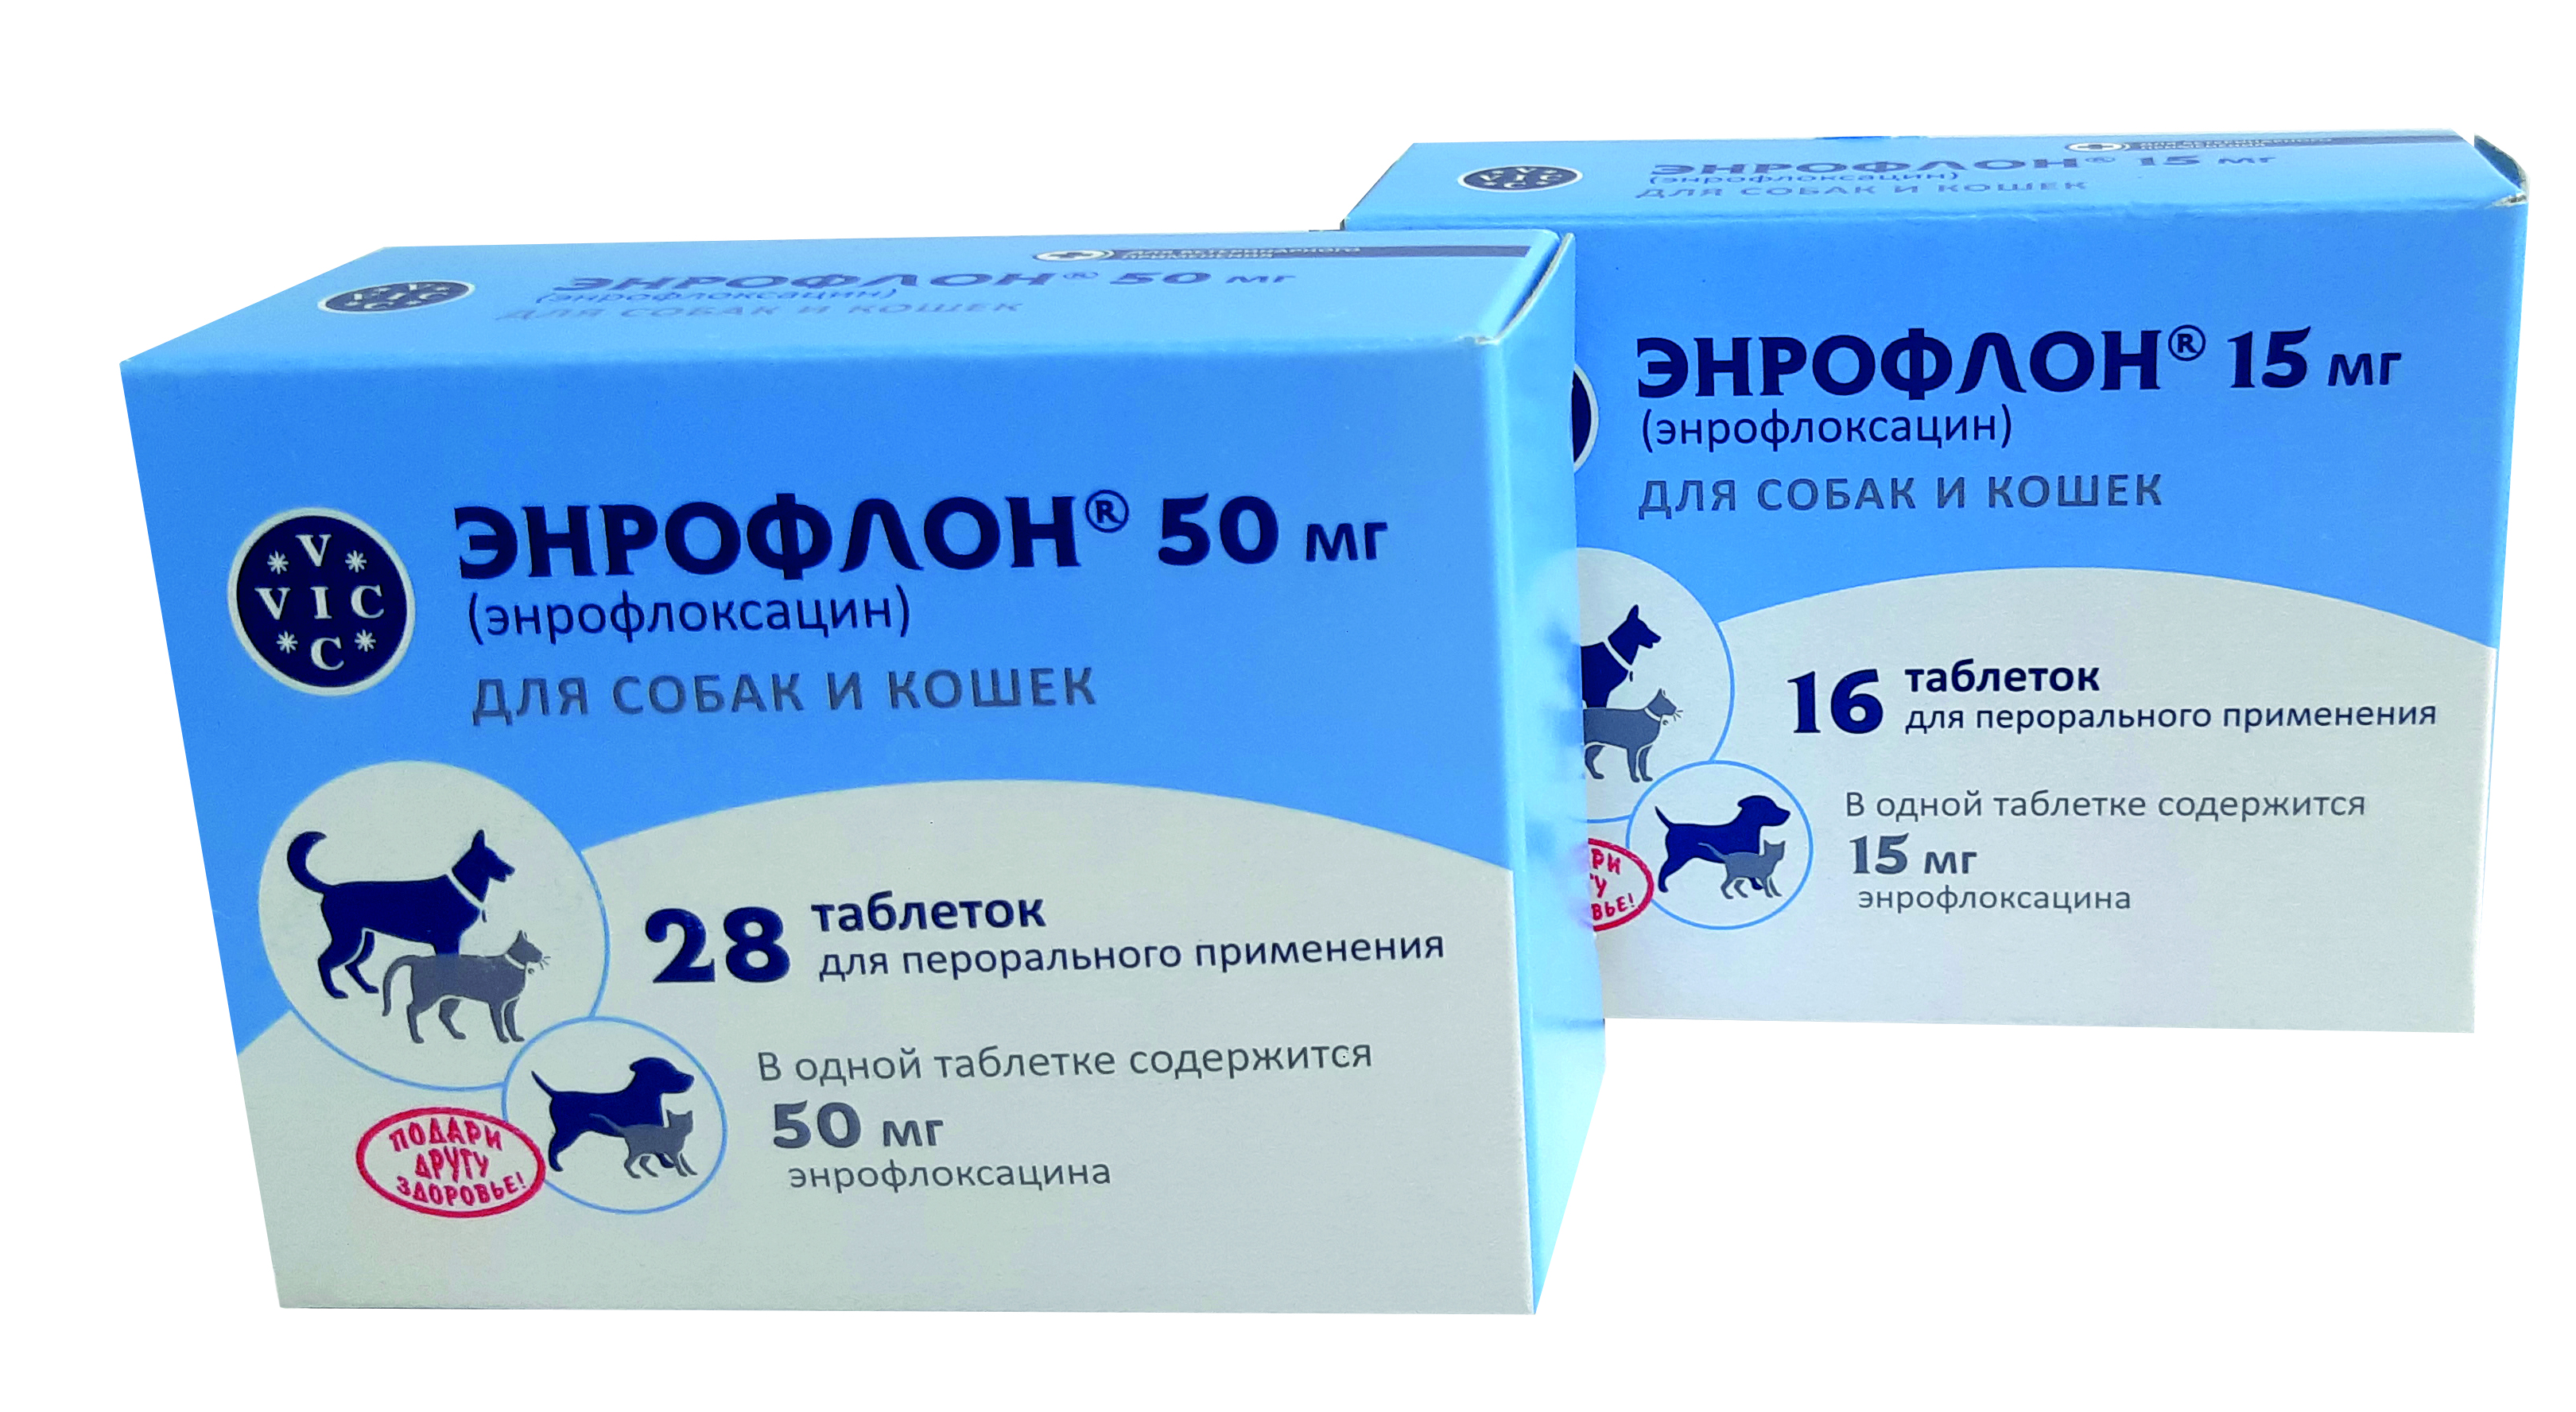 Enroflon 15, 50, 150 mg